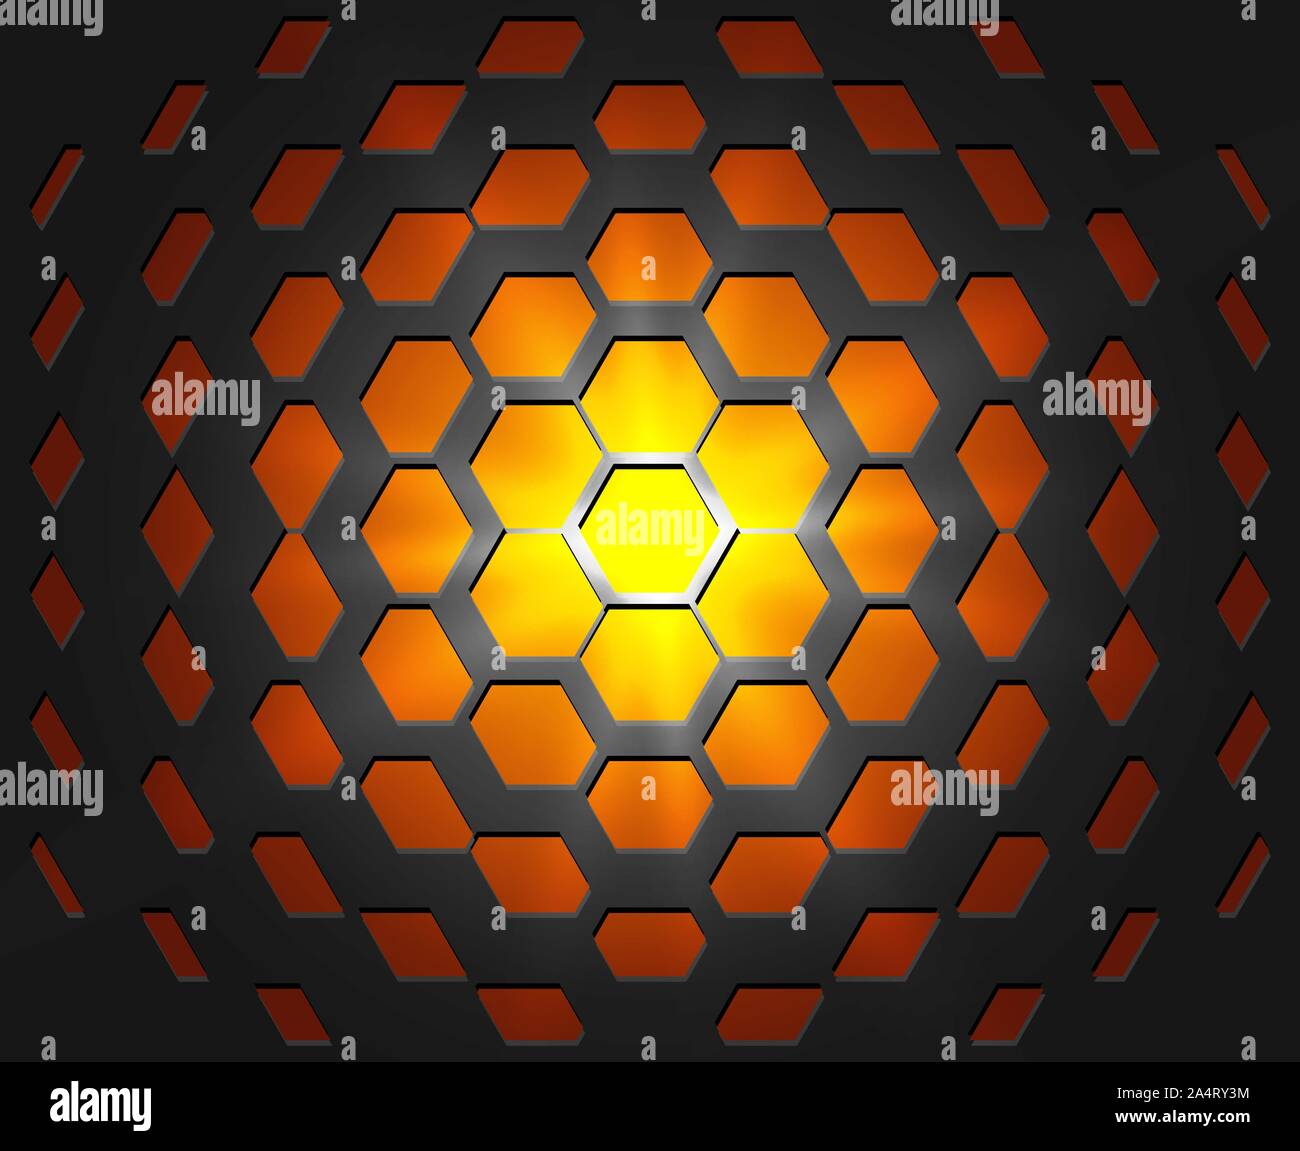 Abstrakte industrielle realistische Prägung Band sechseckige Textur, deprimiert 3d Hexagon schwarzer Hintergrund, geometrischen Rasters. Hot orange und gelb flare Stock Vektor